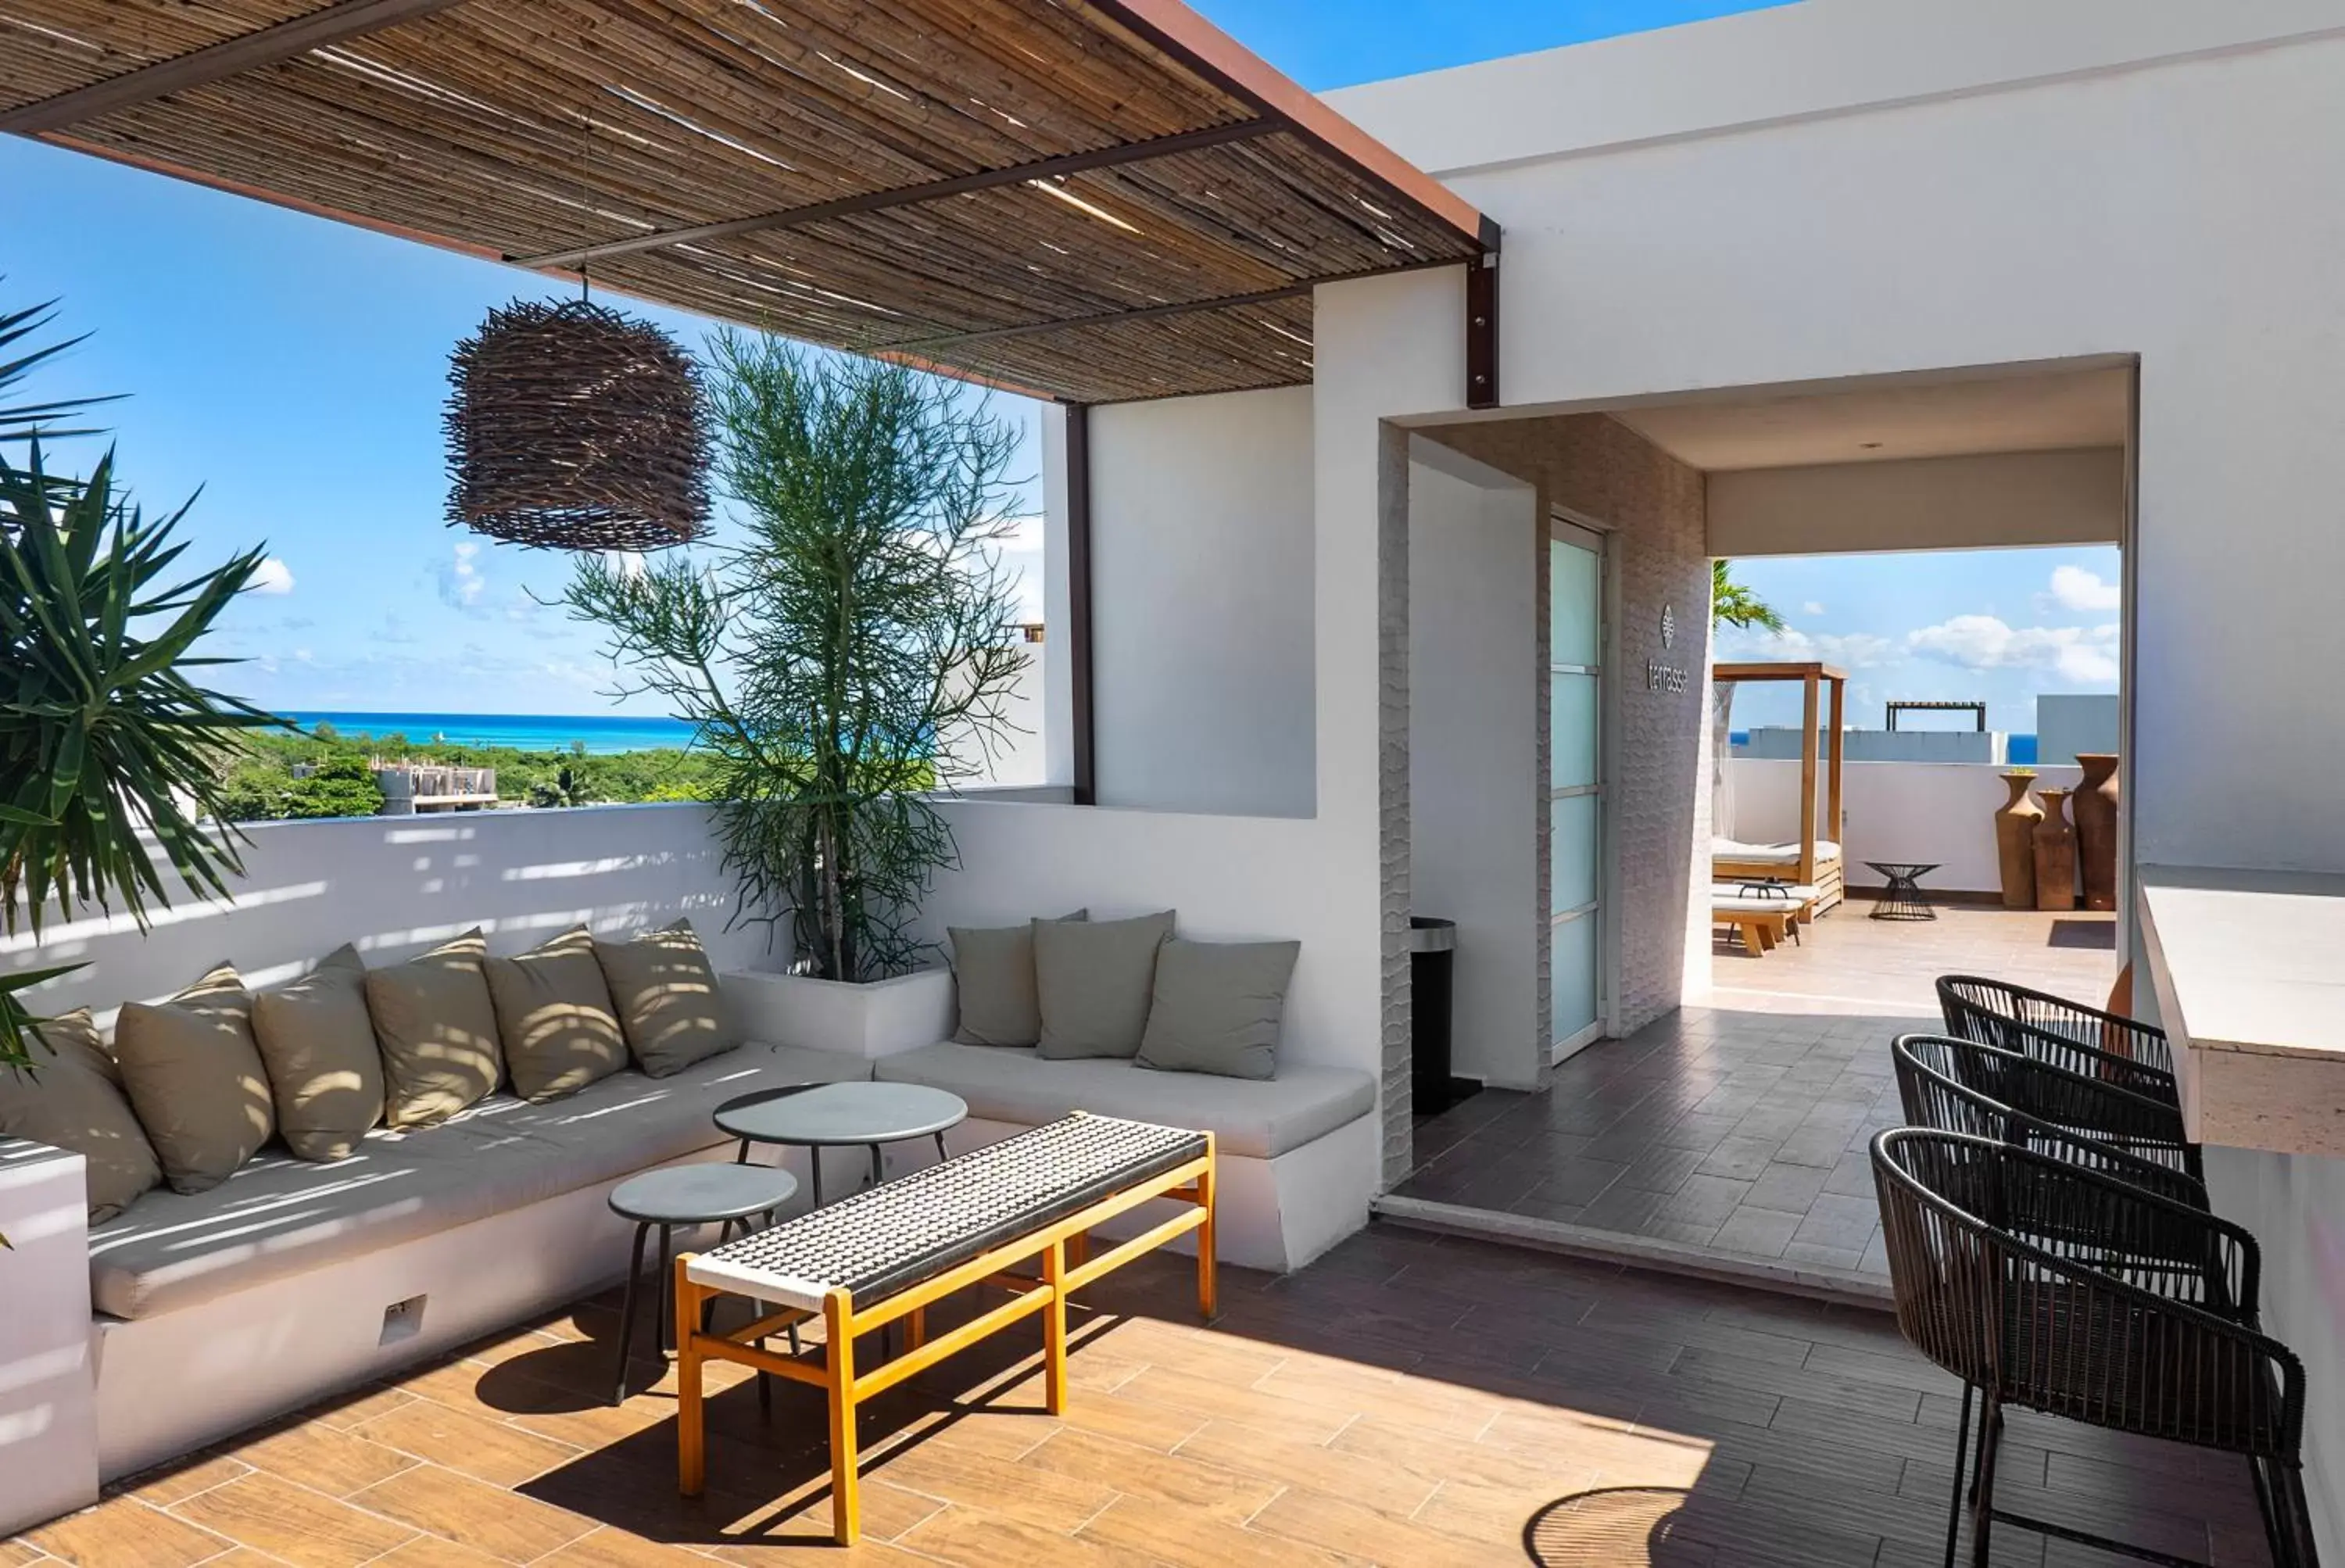 Balcony/Terrace, Seating Area in Terrasse Hotel Playa del Carmen